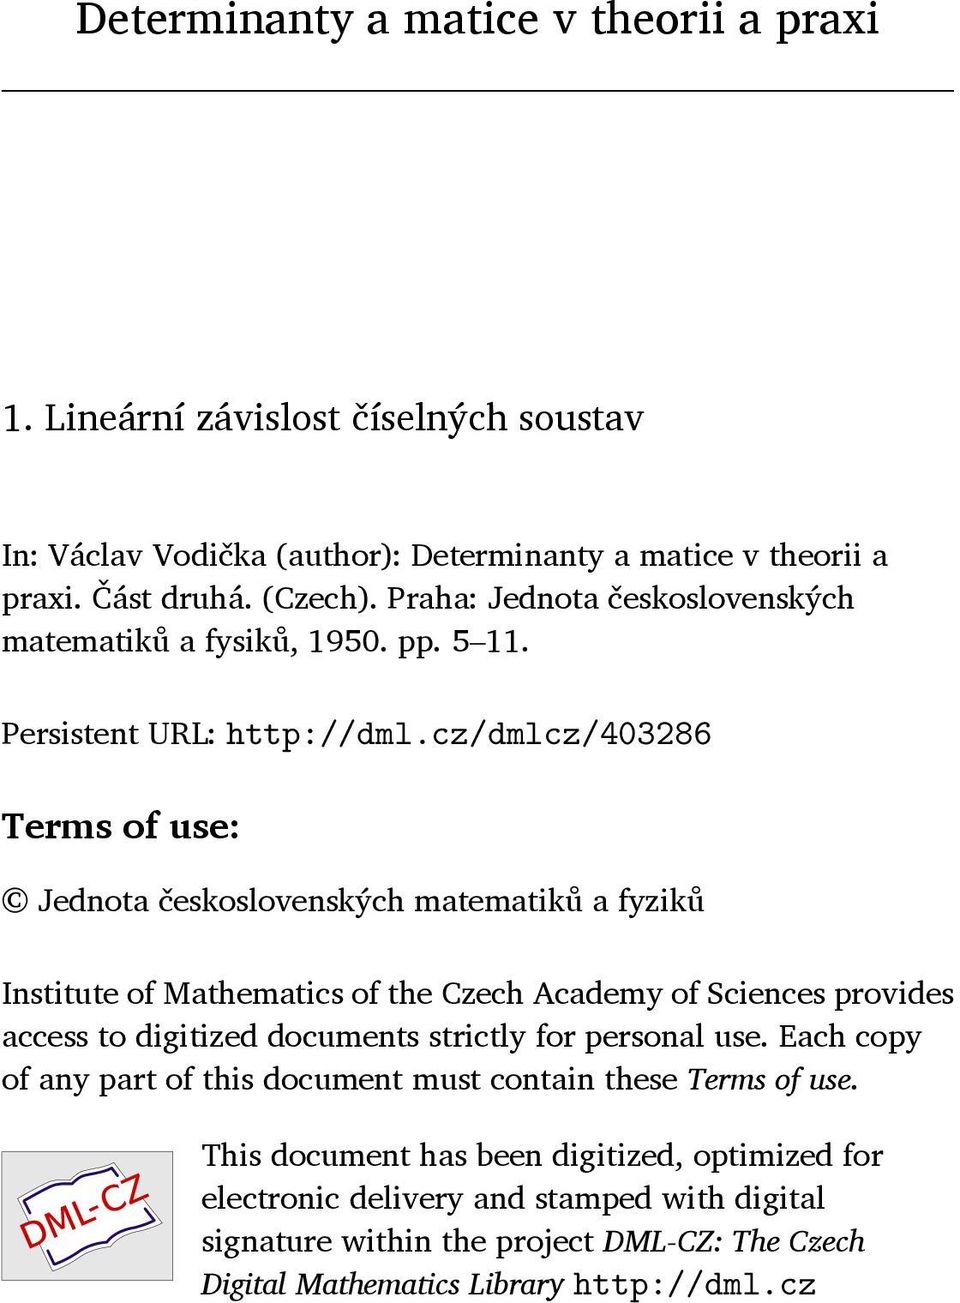 cz/dmlcz/403286 Terms of use: Jednota československých matematiků a fyziků Institute of Mathematics of the Czech Academy of Sciences provides access to digitized documents